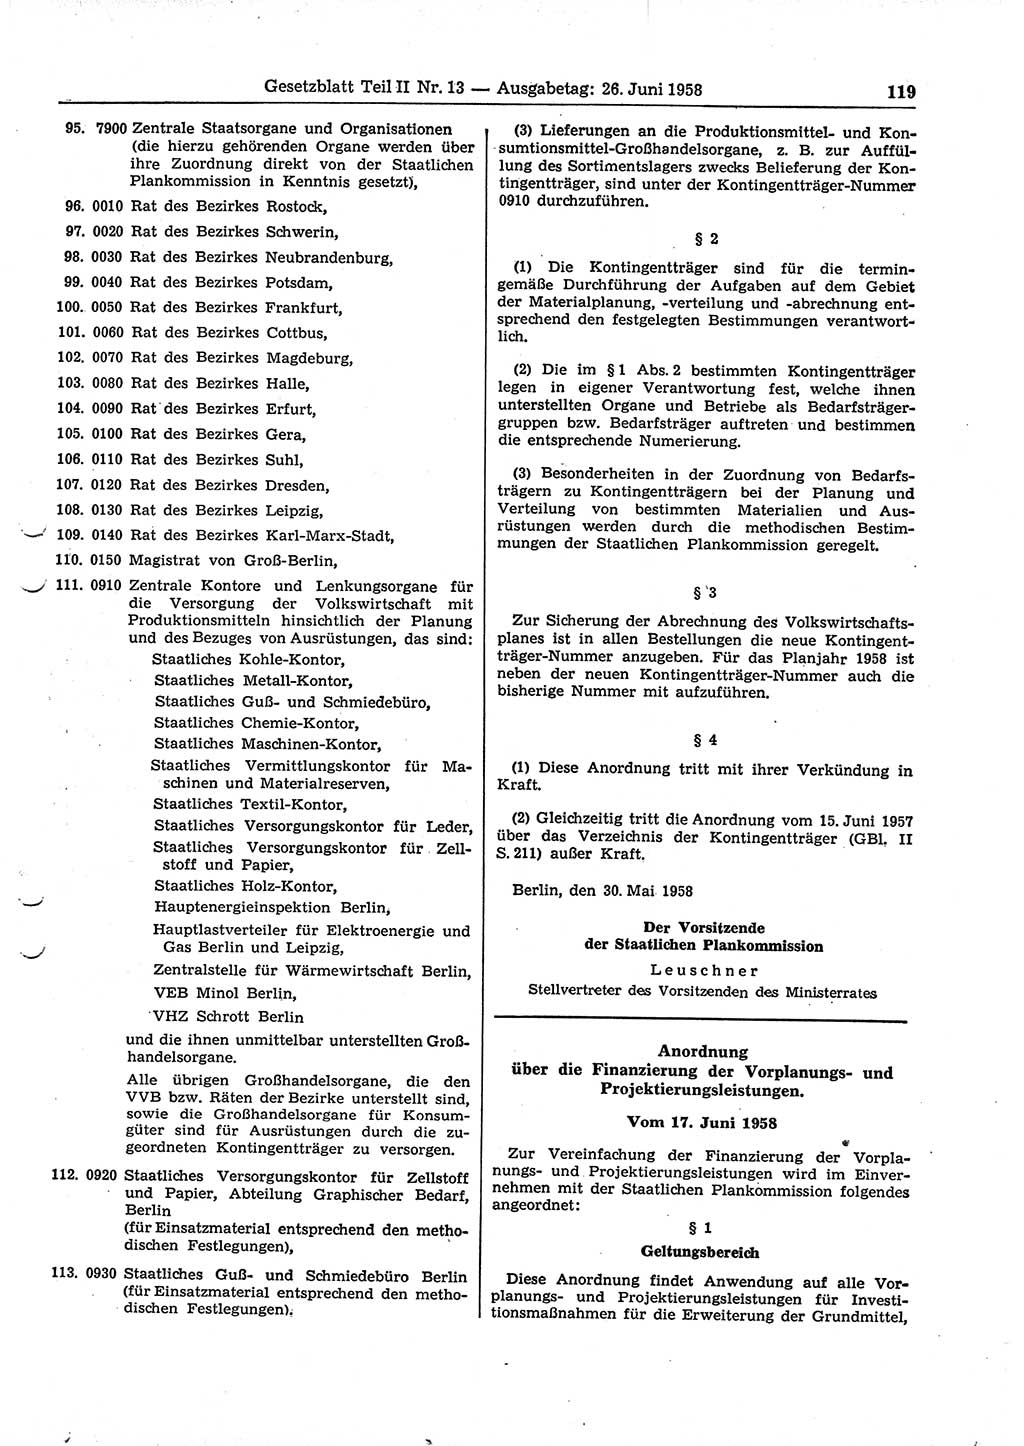 Gesetzblatt (GBl.) der Deutschen Demokratischen Republik (DDR) Teil ⅠⅠ 1958, Seite 119 (GBl. DDR ⅠⅠ 1958, S. 119)